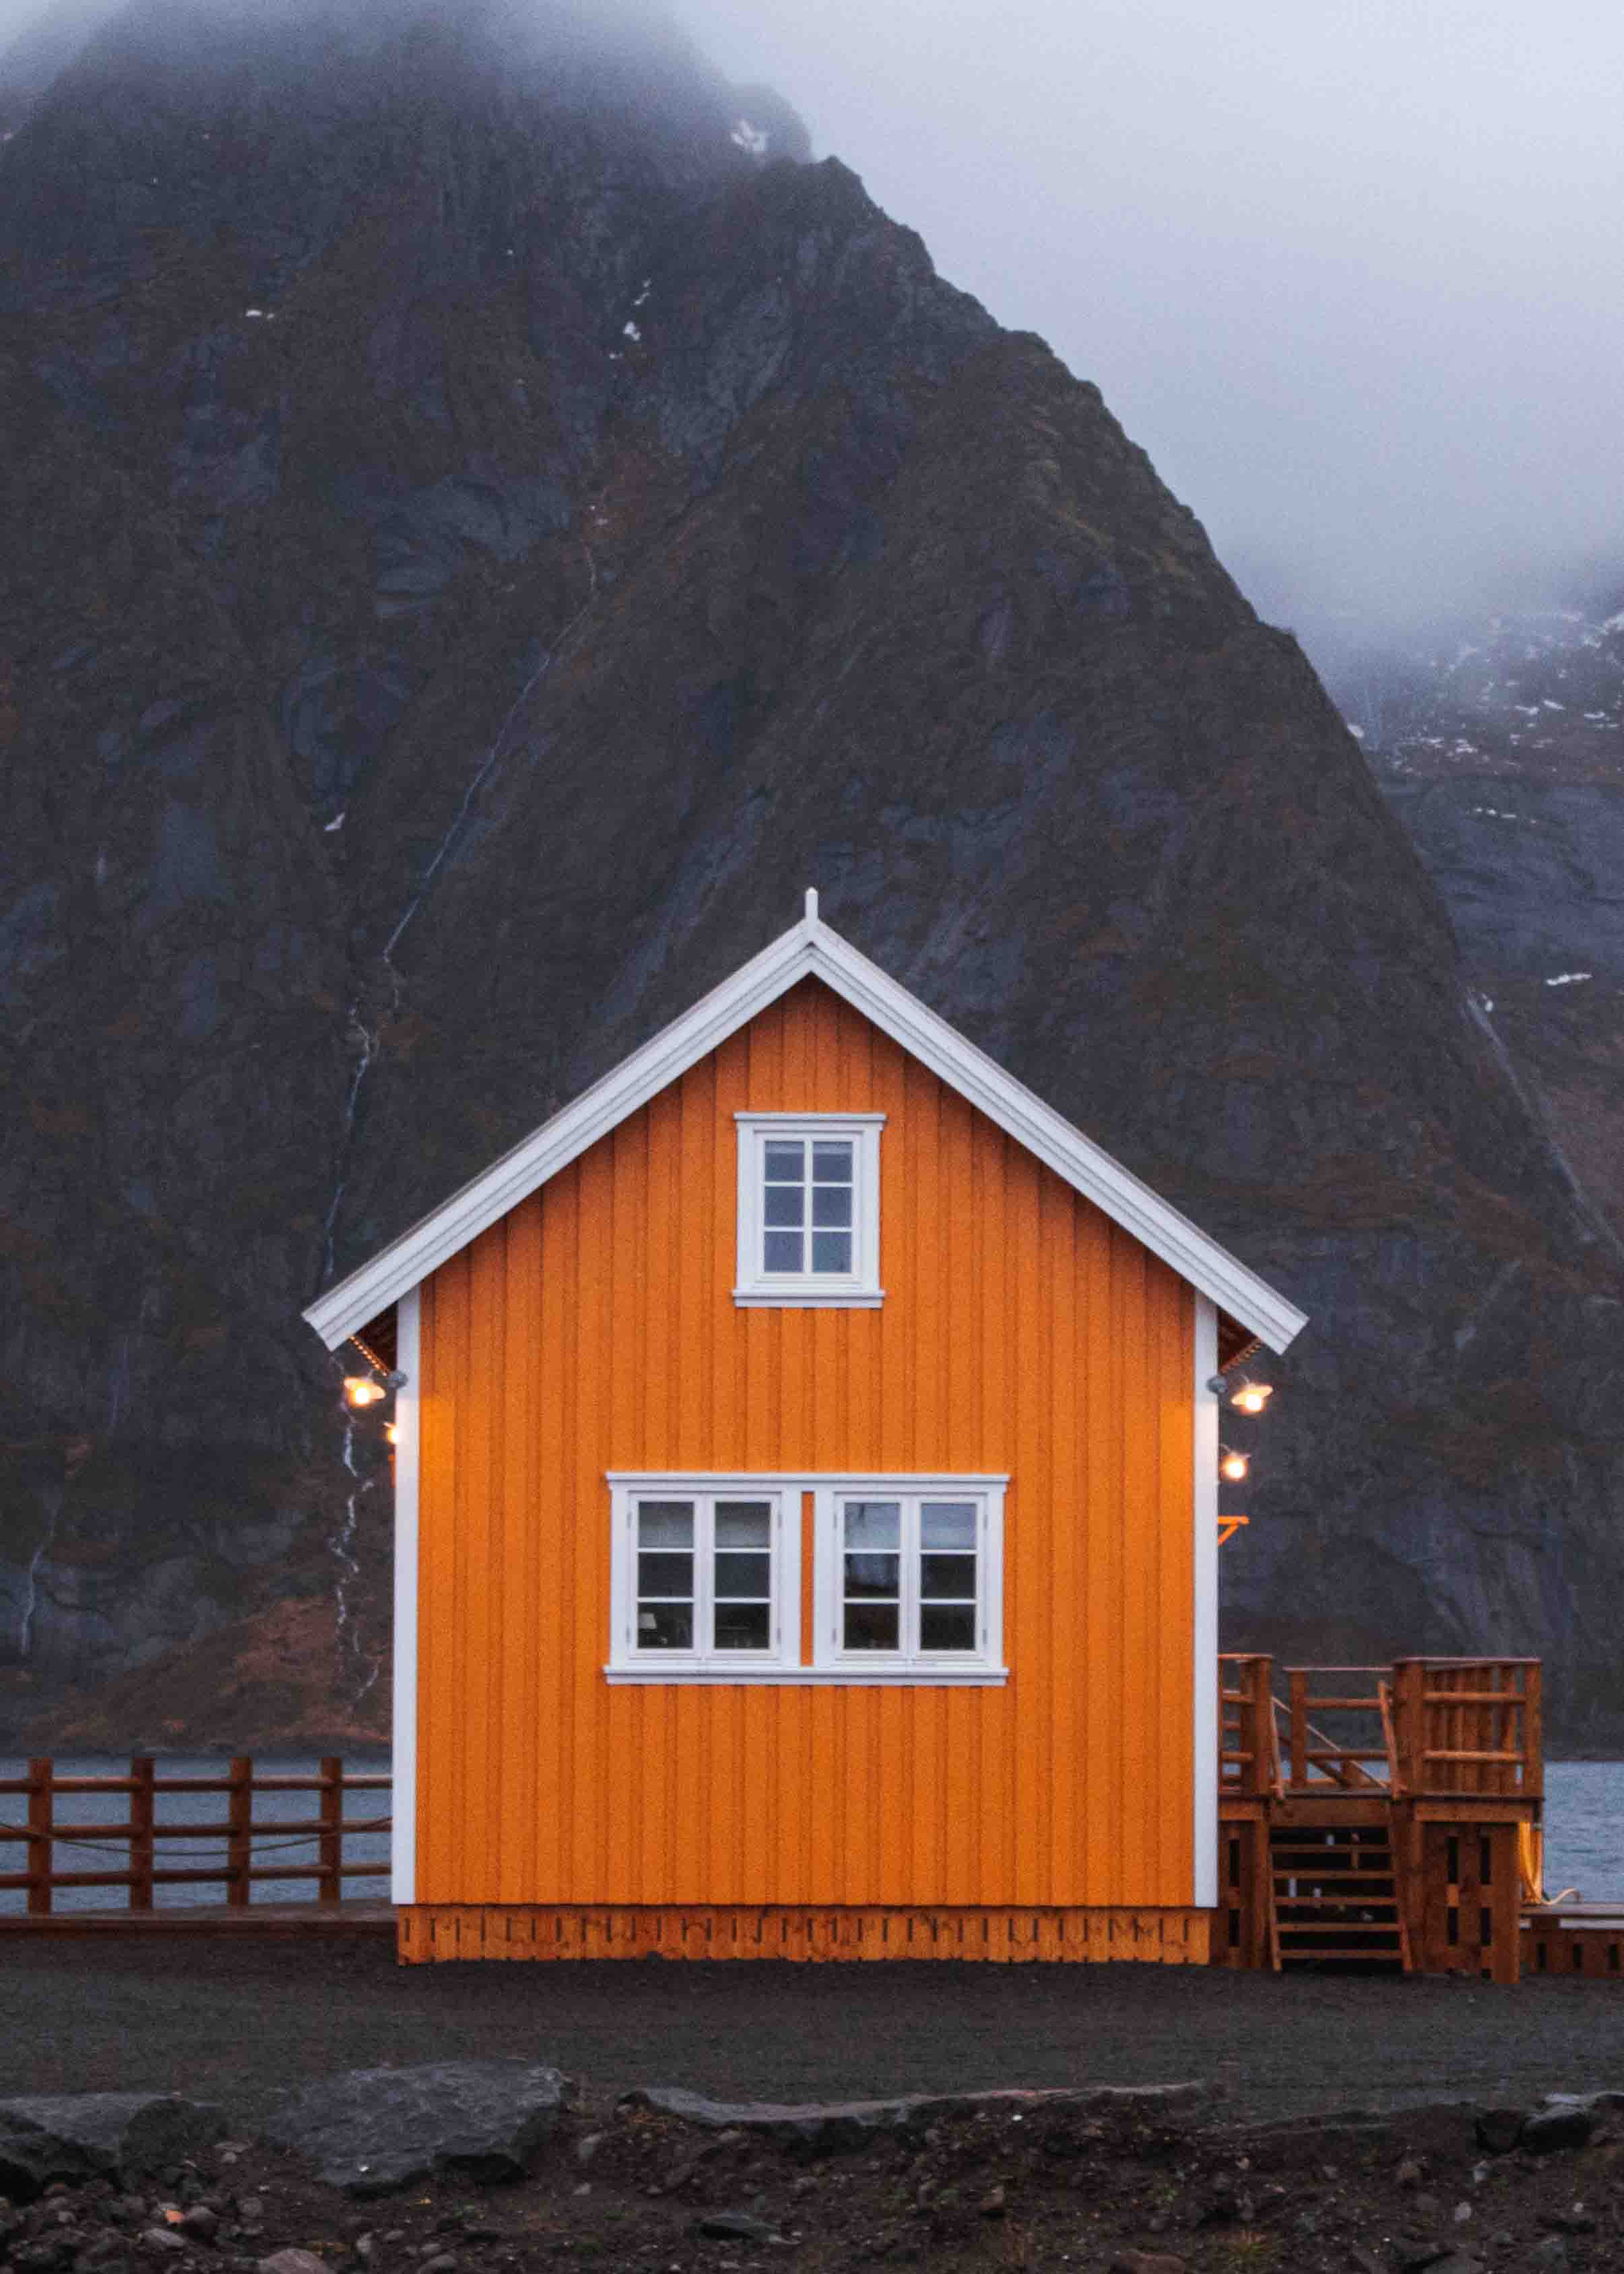 Sakrisøya lofoten yellow fishing huts in winter